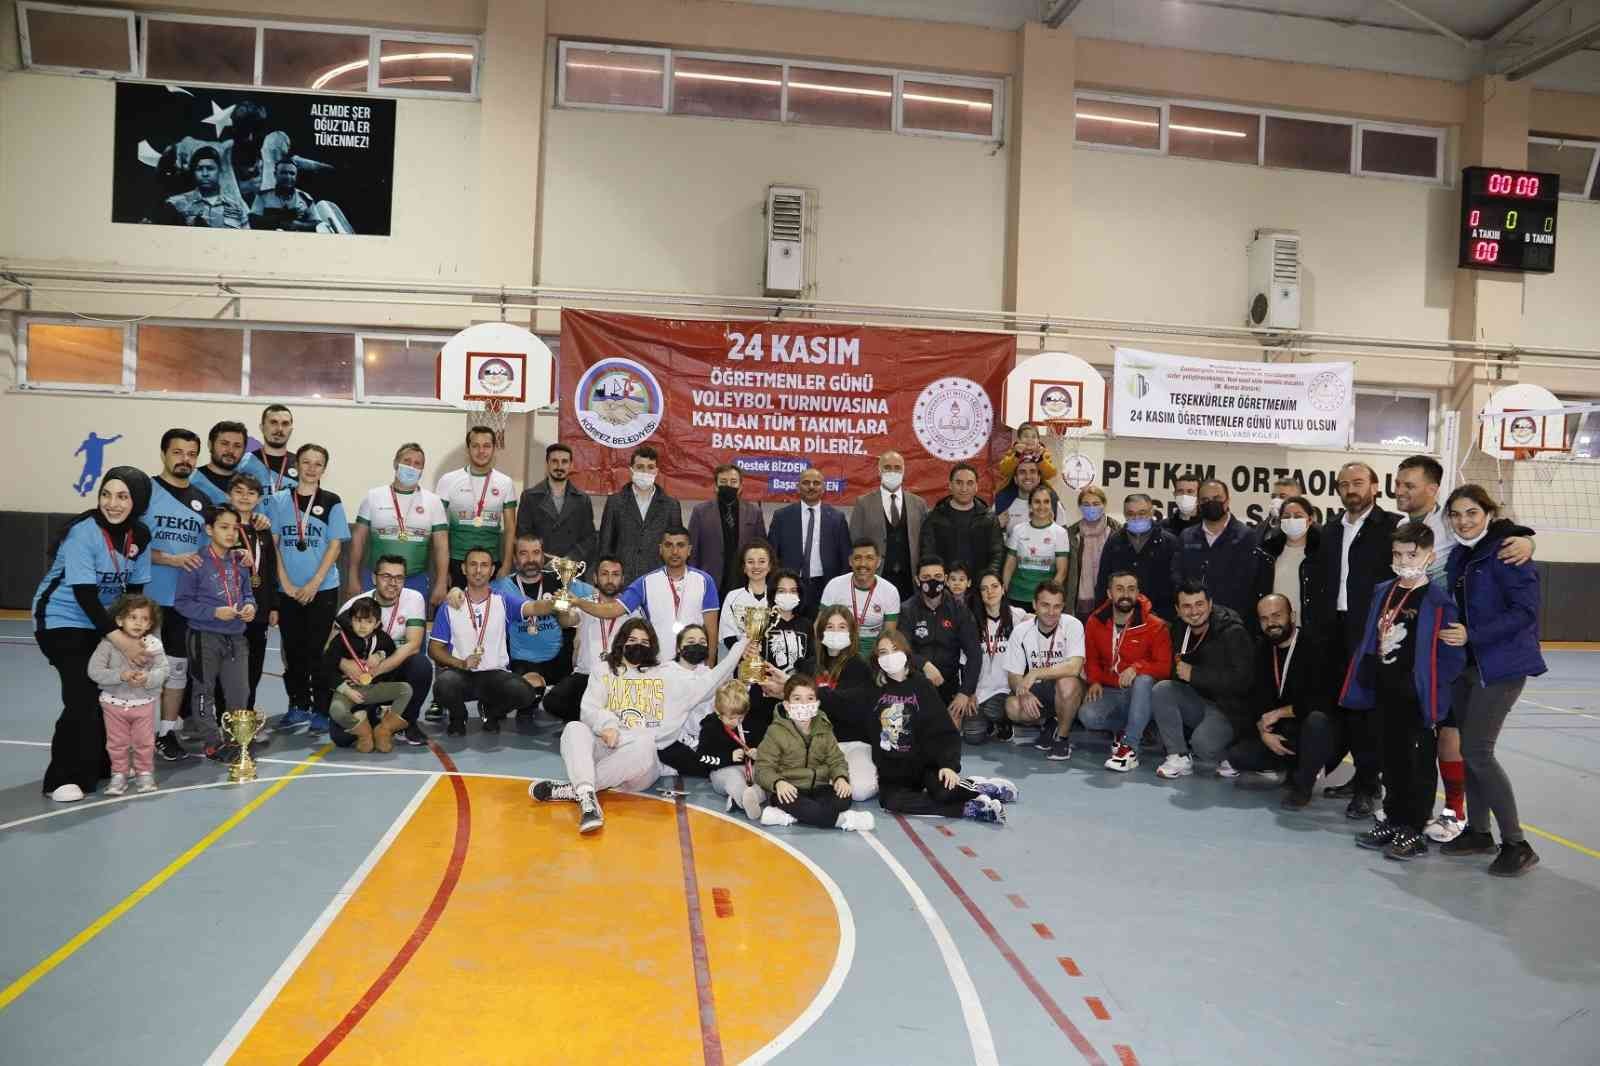 Körfez’de Öğretmenler Günü’ne özel voleybol turnuvasının şampiyonu Uluğbey Ortaokulu oldu #kocaeli